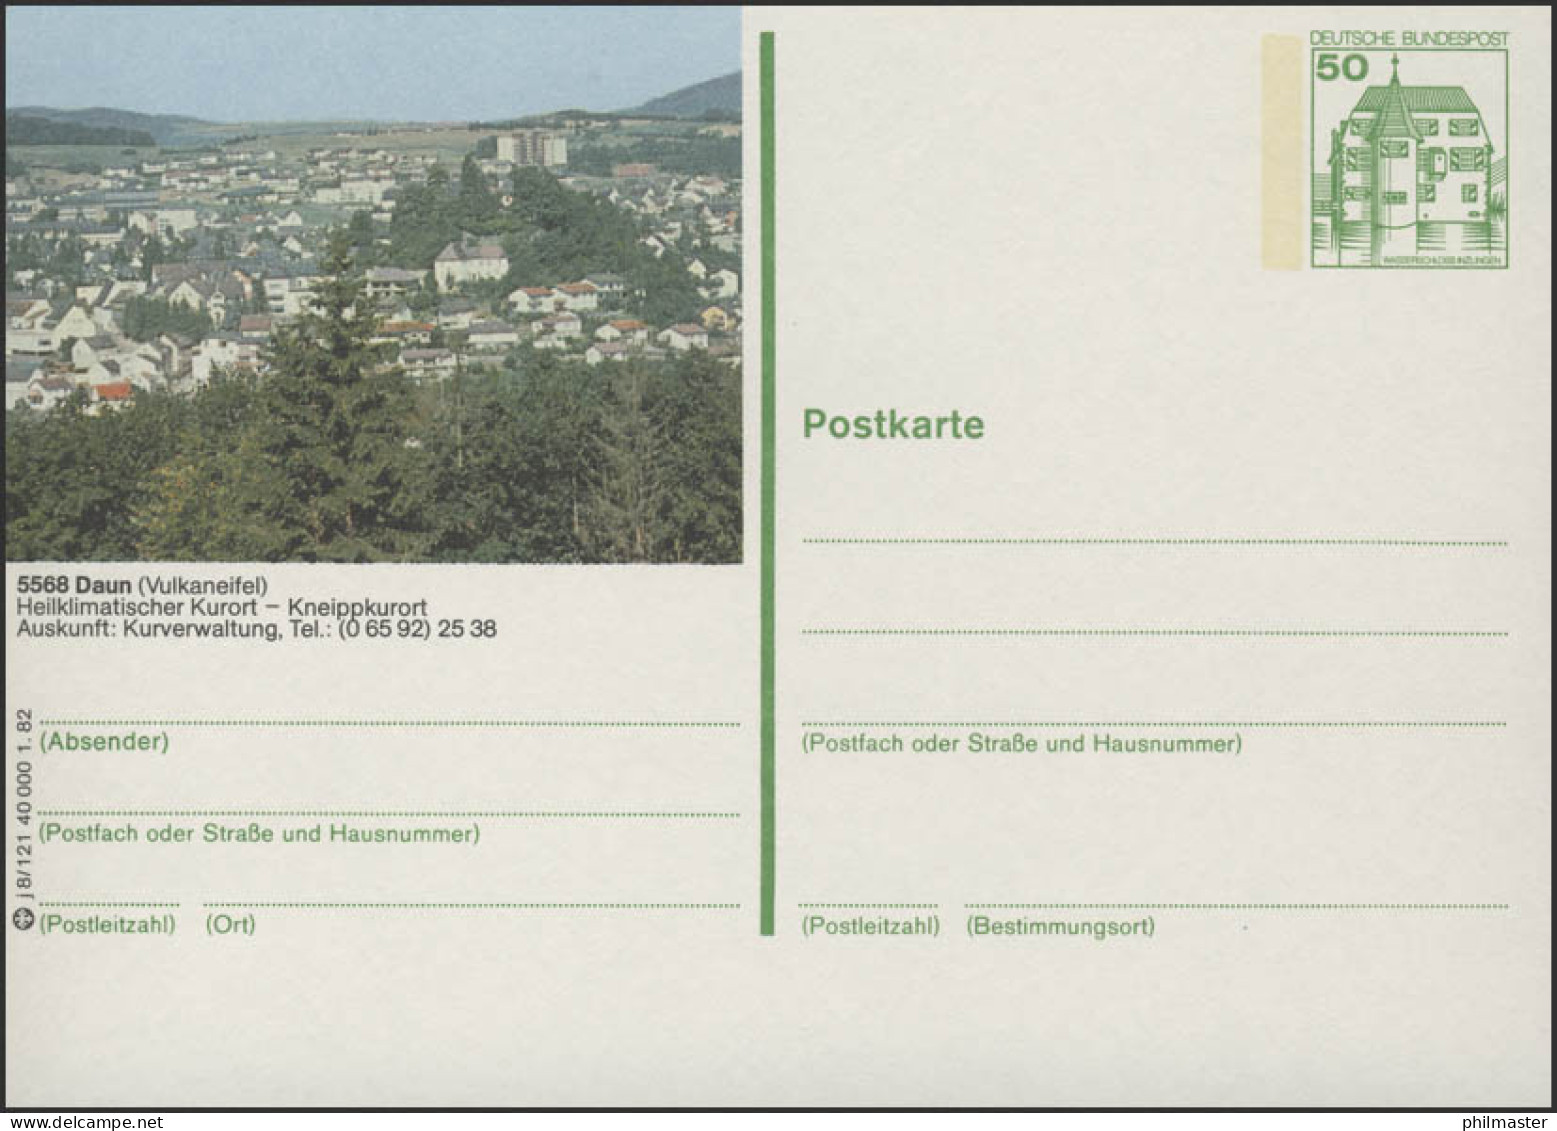 P134-j8/121 - 5568 Daun, Panorama Der Stadt ** - Illustrated Postcards - Mint